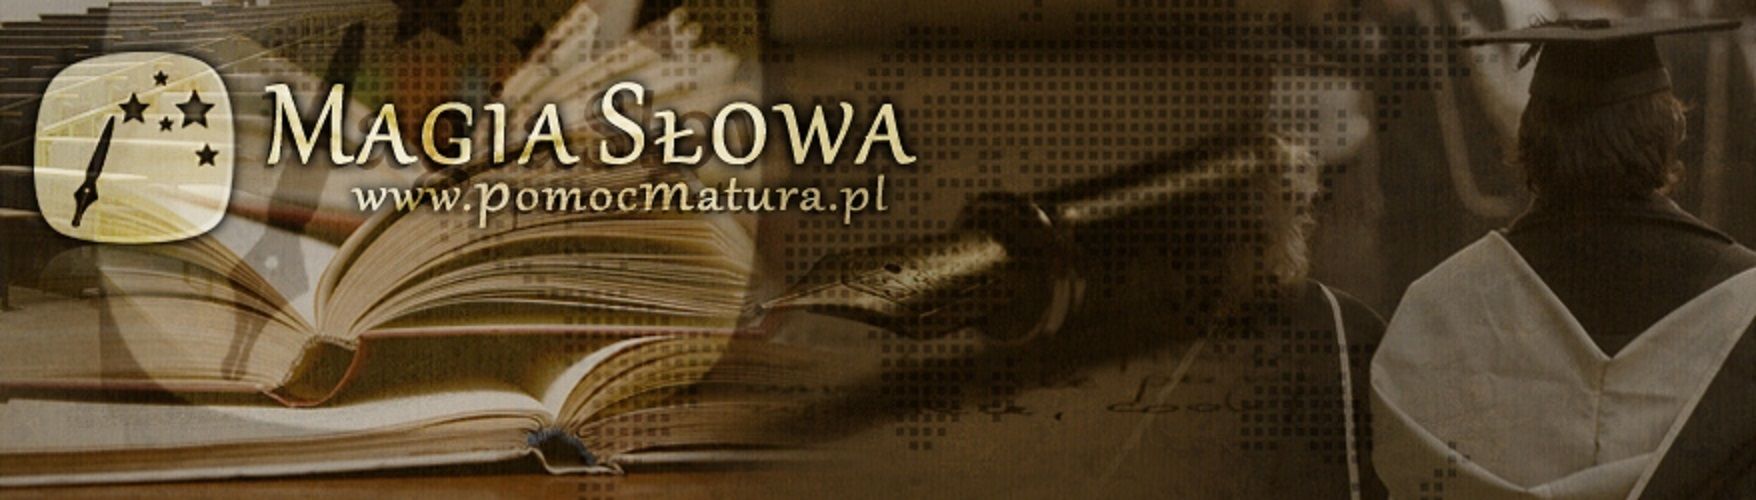 Prace dyplomowe referaty eseje zadania szkolne - ekspresowo bez zaliczki Wrocław - Zdjęcie 1